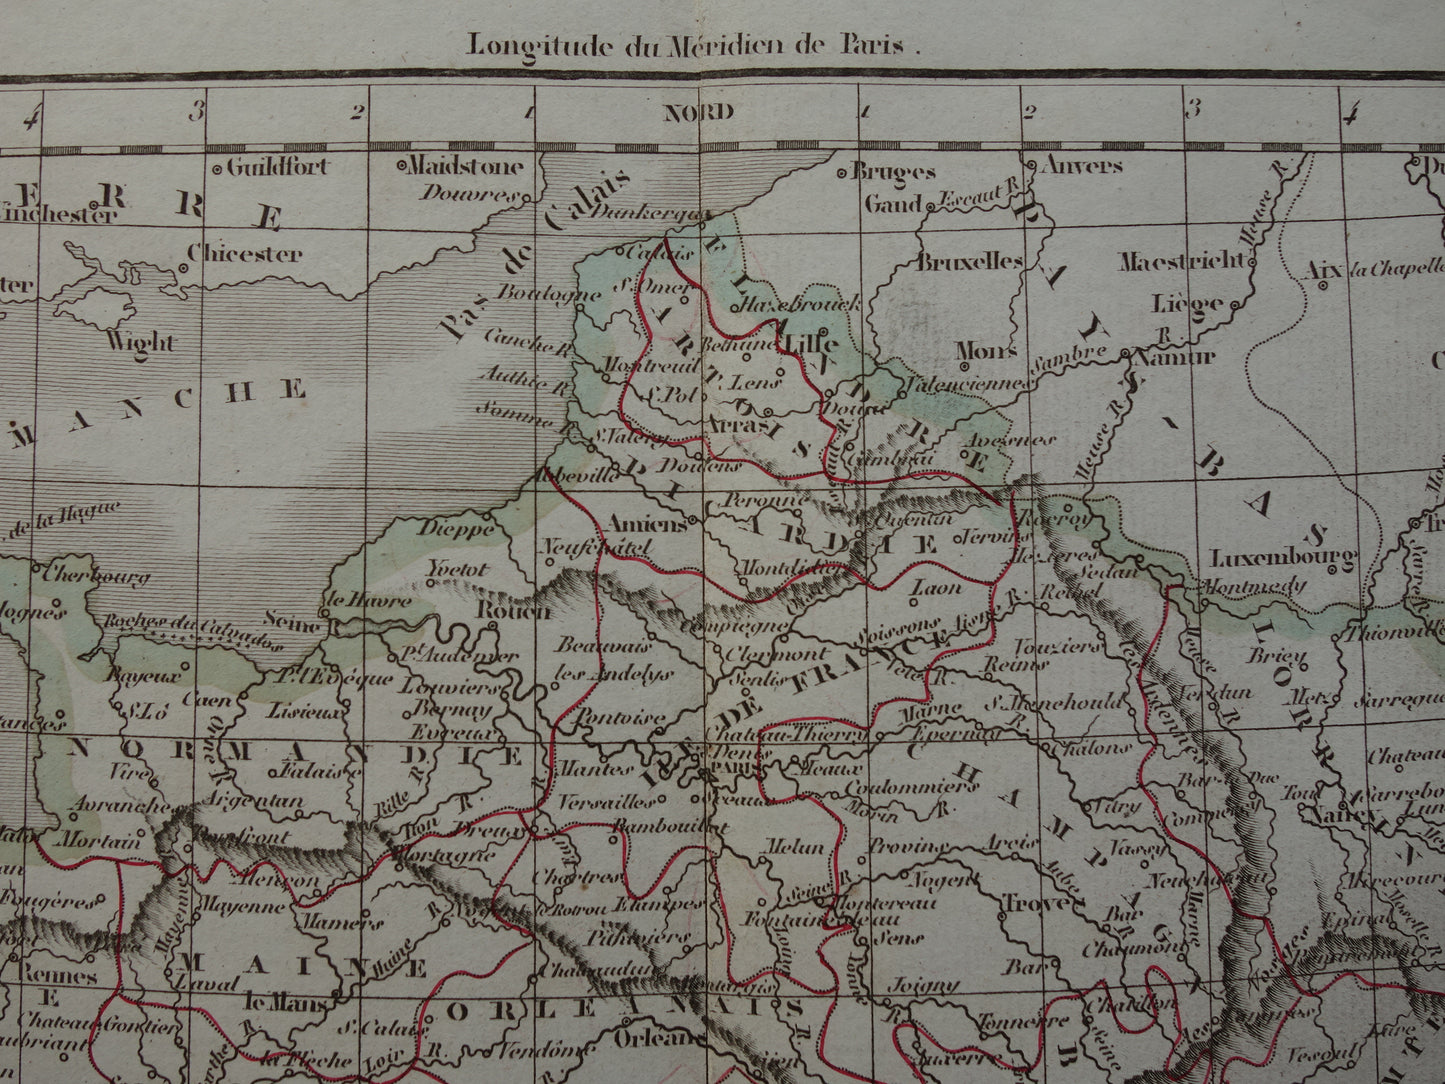 FRANKRIJK oude historische landkaart van 32 provincies Frankrijk voor 1790 - originele antieke kaart uit 1833